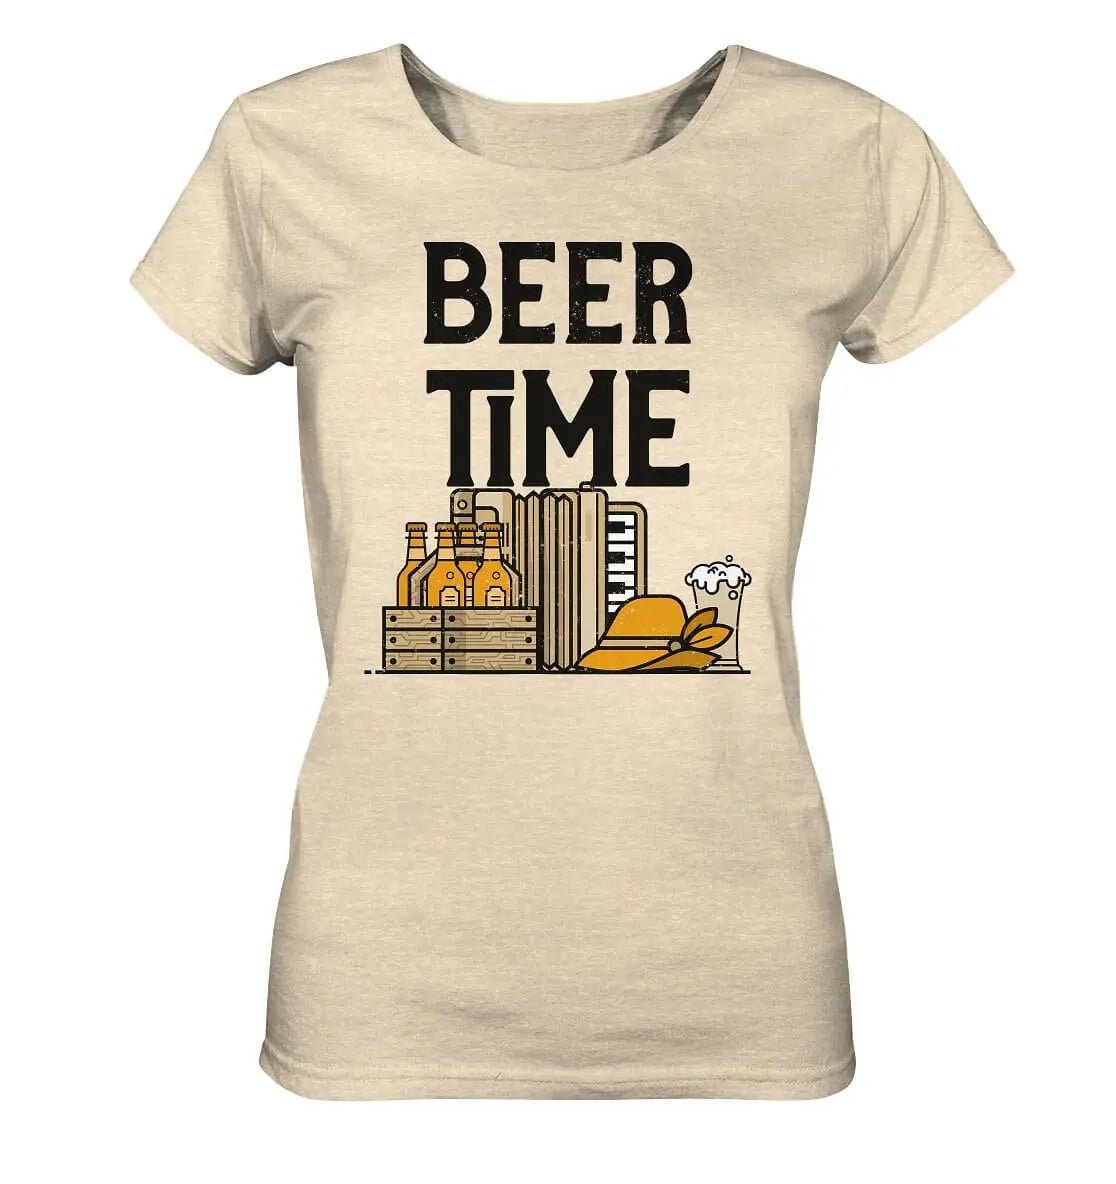 Hoppymerch's Beer Time Oktoberfest Damen T-Shirt.